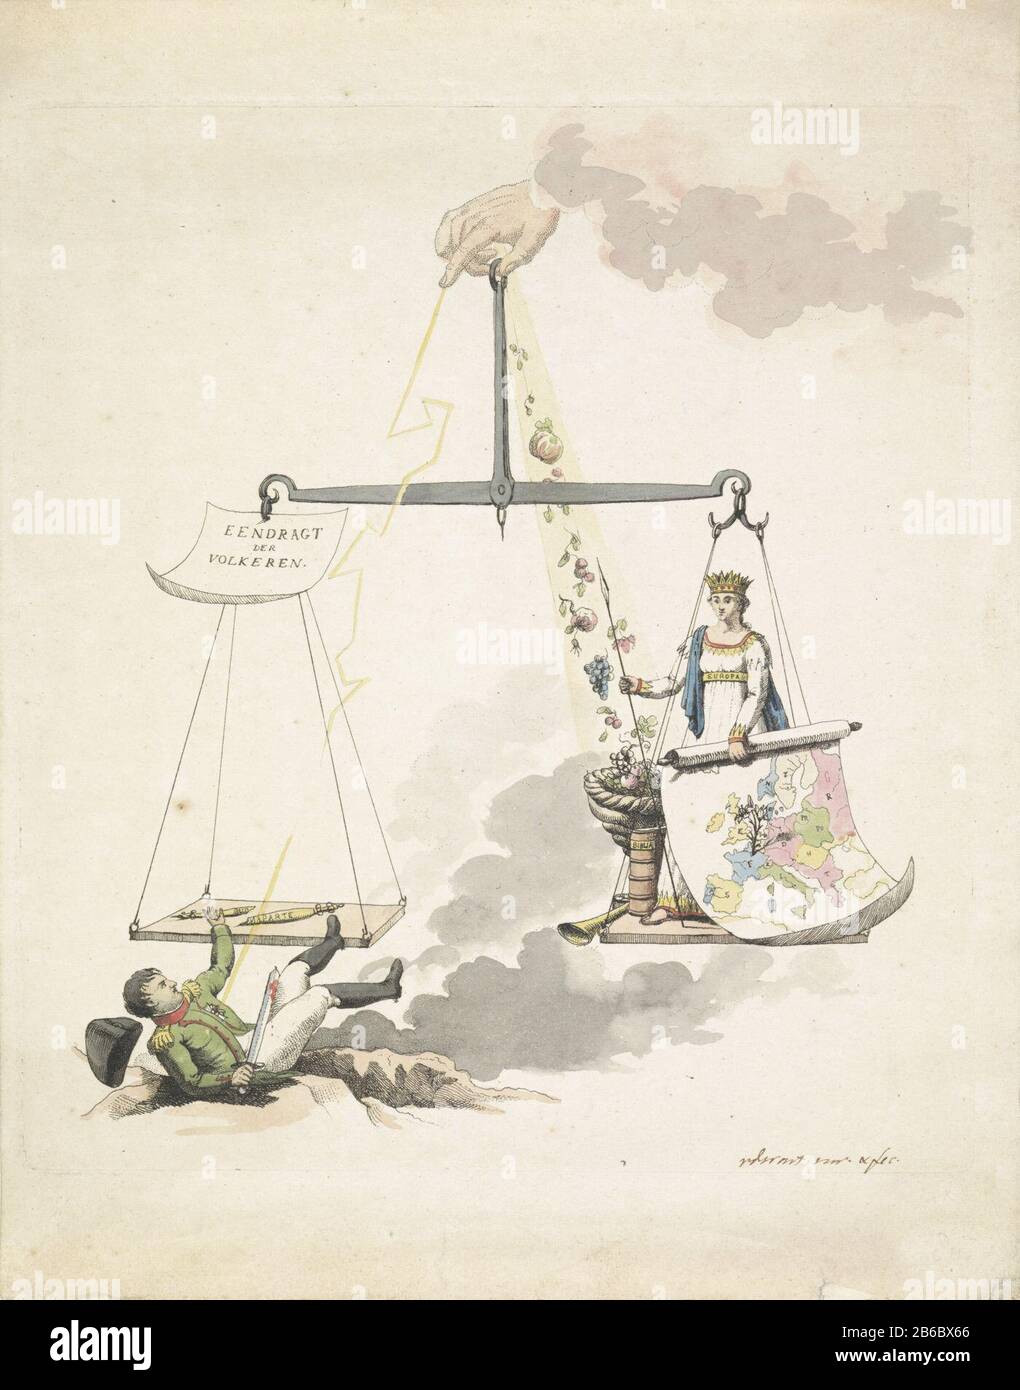 Balance van Europa, 1814 le dessin animé sur la chute de Napoléon en 1814.  L'empereur, frappé par la foudre, est montré dans l'équilibre 'Eendragt de  nations' et tenu par la main de